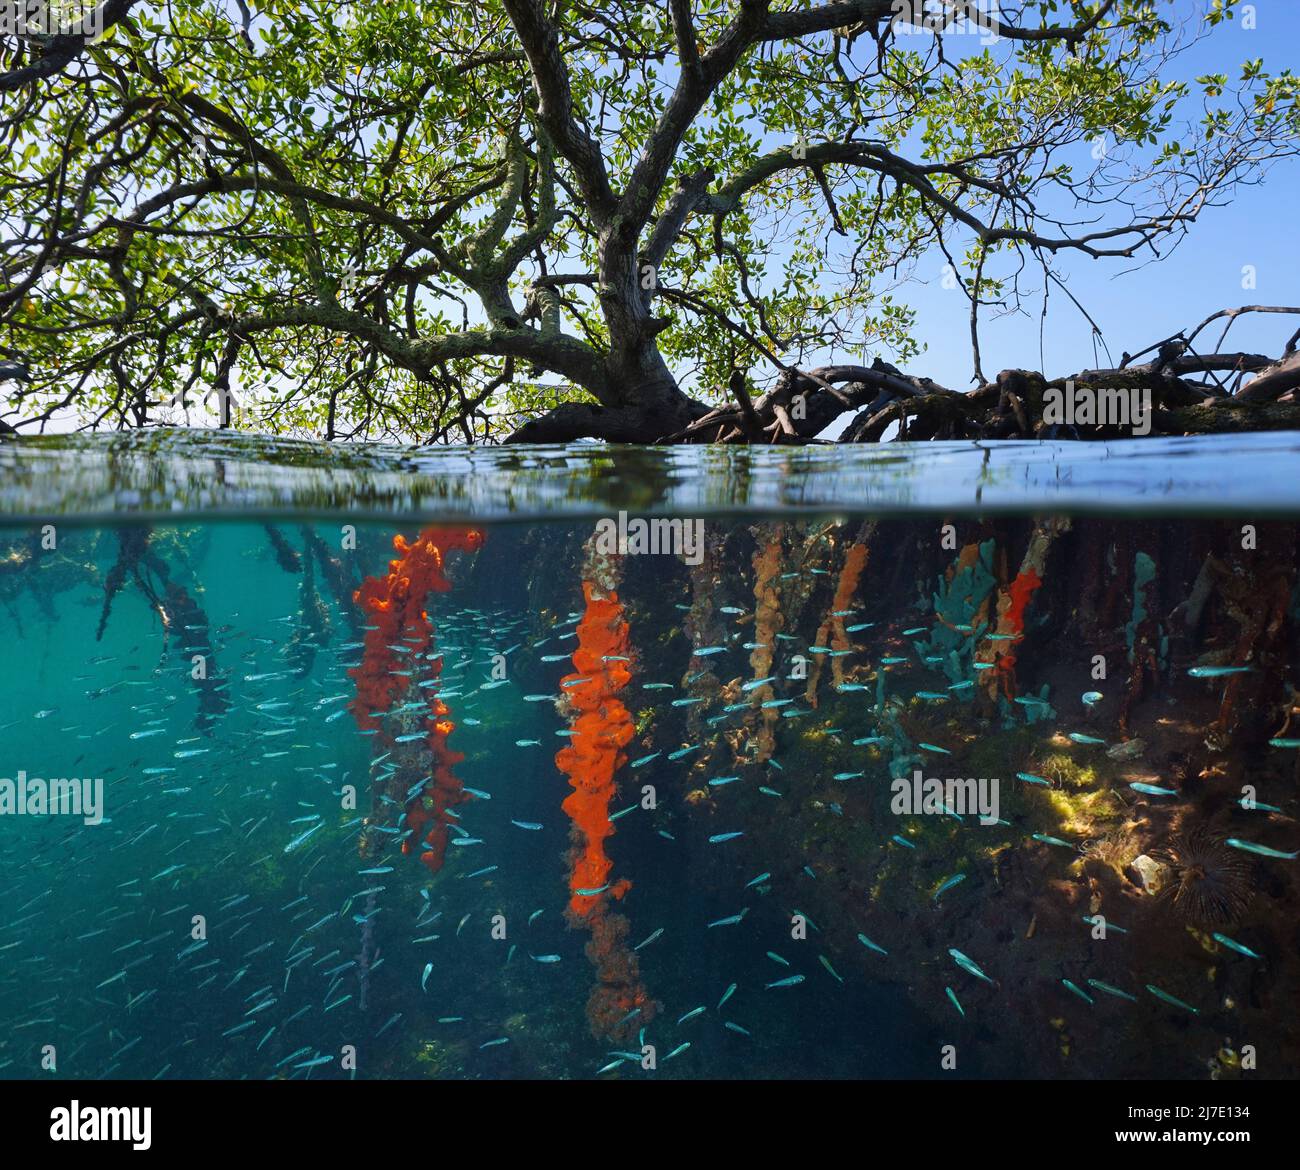 Mangrovenbaum im Meer mit kleinen Fischen und Schwämmen an den Wurzeln unter Wasser, Split-Level-Ansicht über und unter der Wasseroberfläche in der Karibik Stockfoto